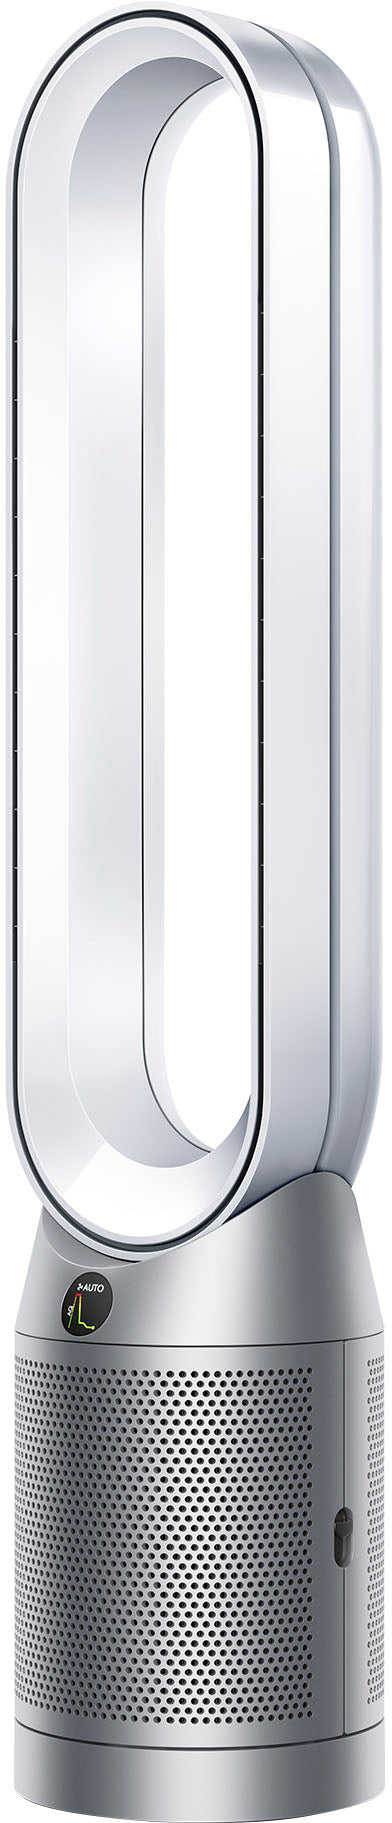 Dyson - Cool Gen1 TP10 Purifier - White/Silver_1